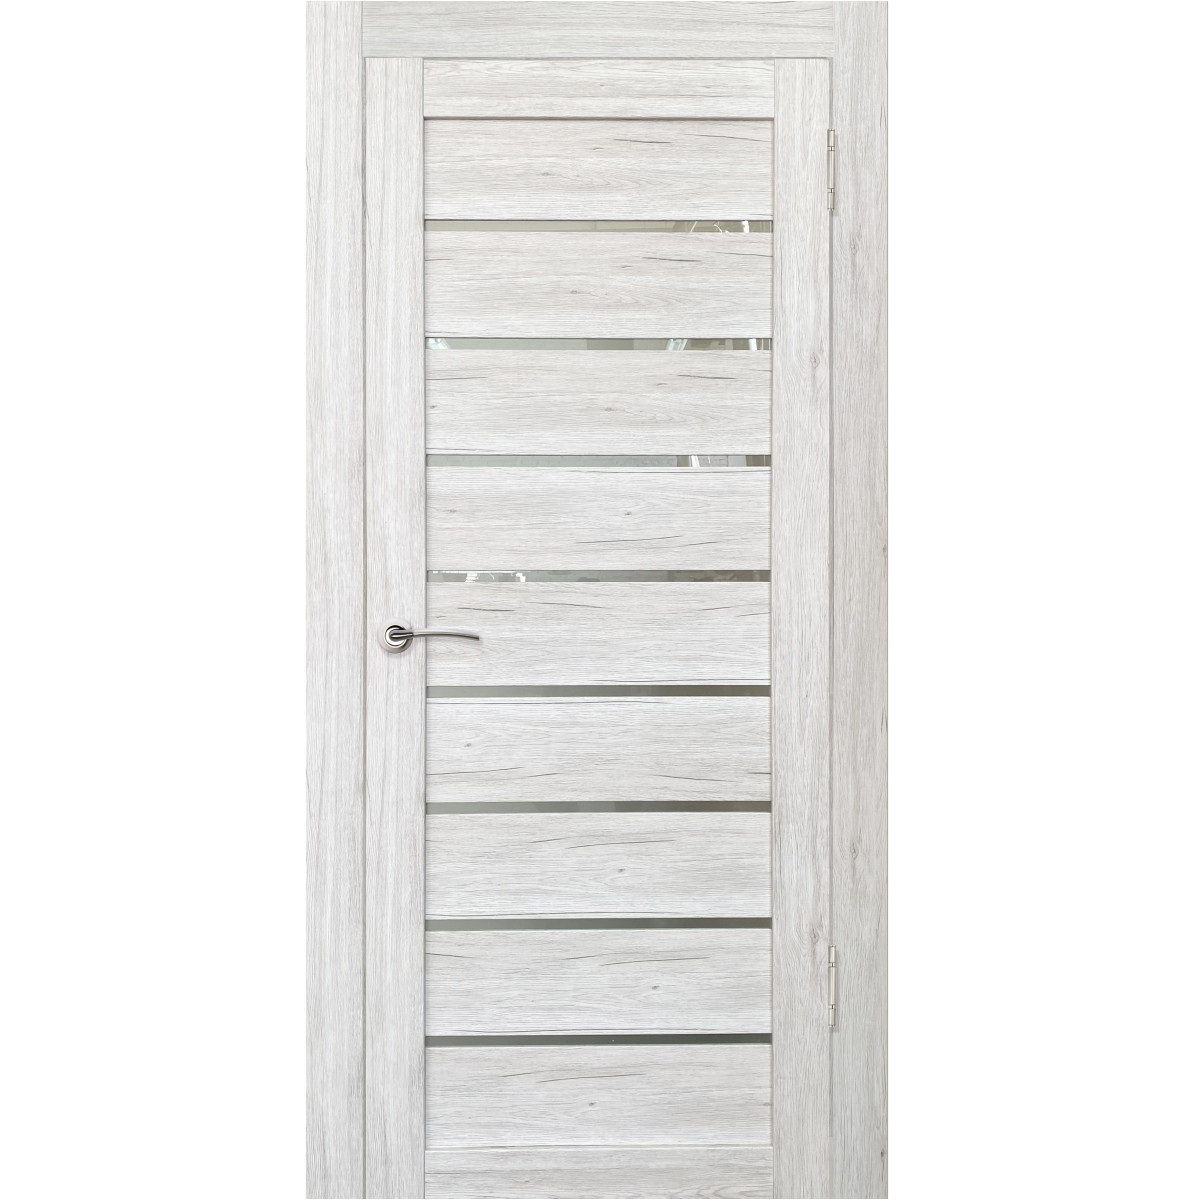 Дверь межкомнатная остеклённая Тиволи 70х200 см с фурнитурой, ПВХ, цвет рустик серый